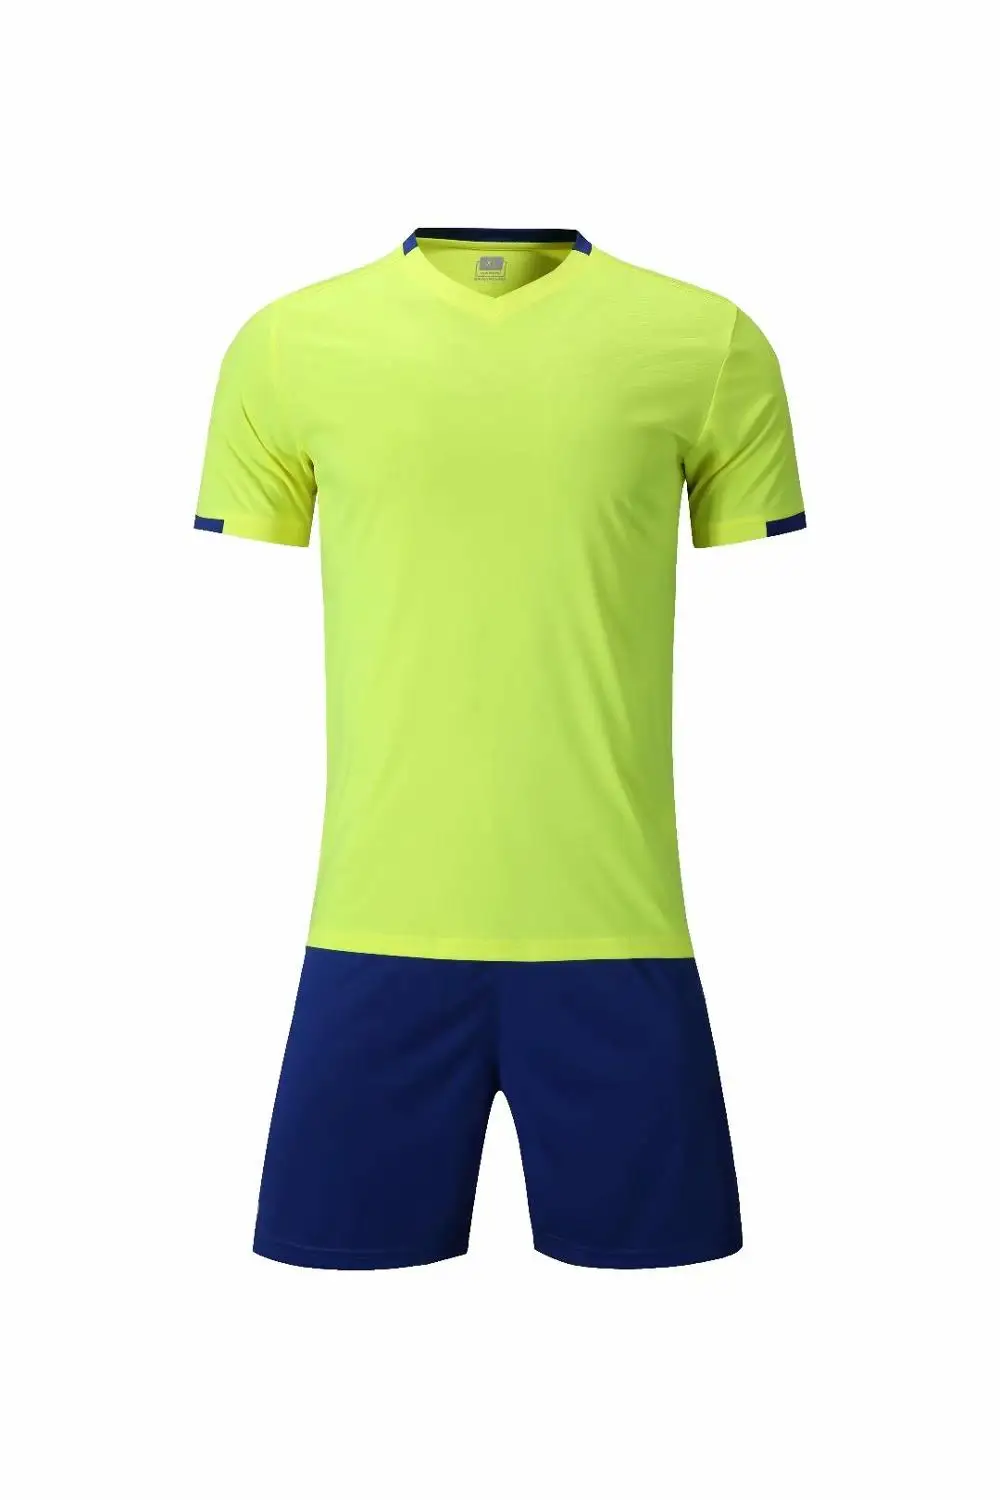 Пользовательские Diy футбольные майки для взрослых и детей, Футбольная форма, быстросохнущая дышащая футболка, шорты, комплект, Camiseta Futbol, Футбольная спортивная одежда